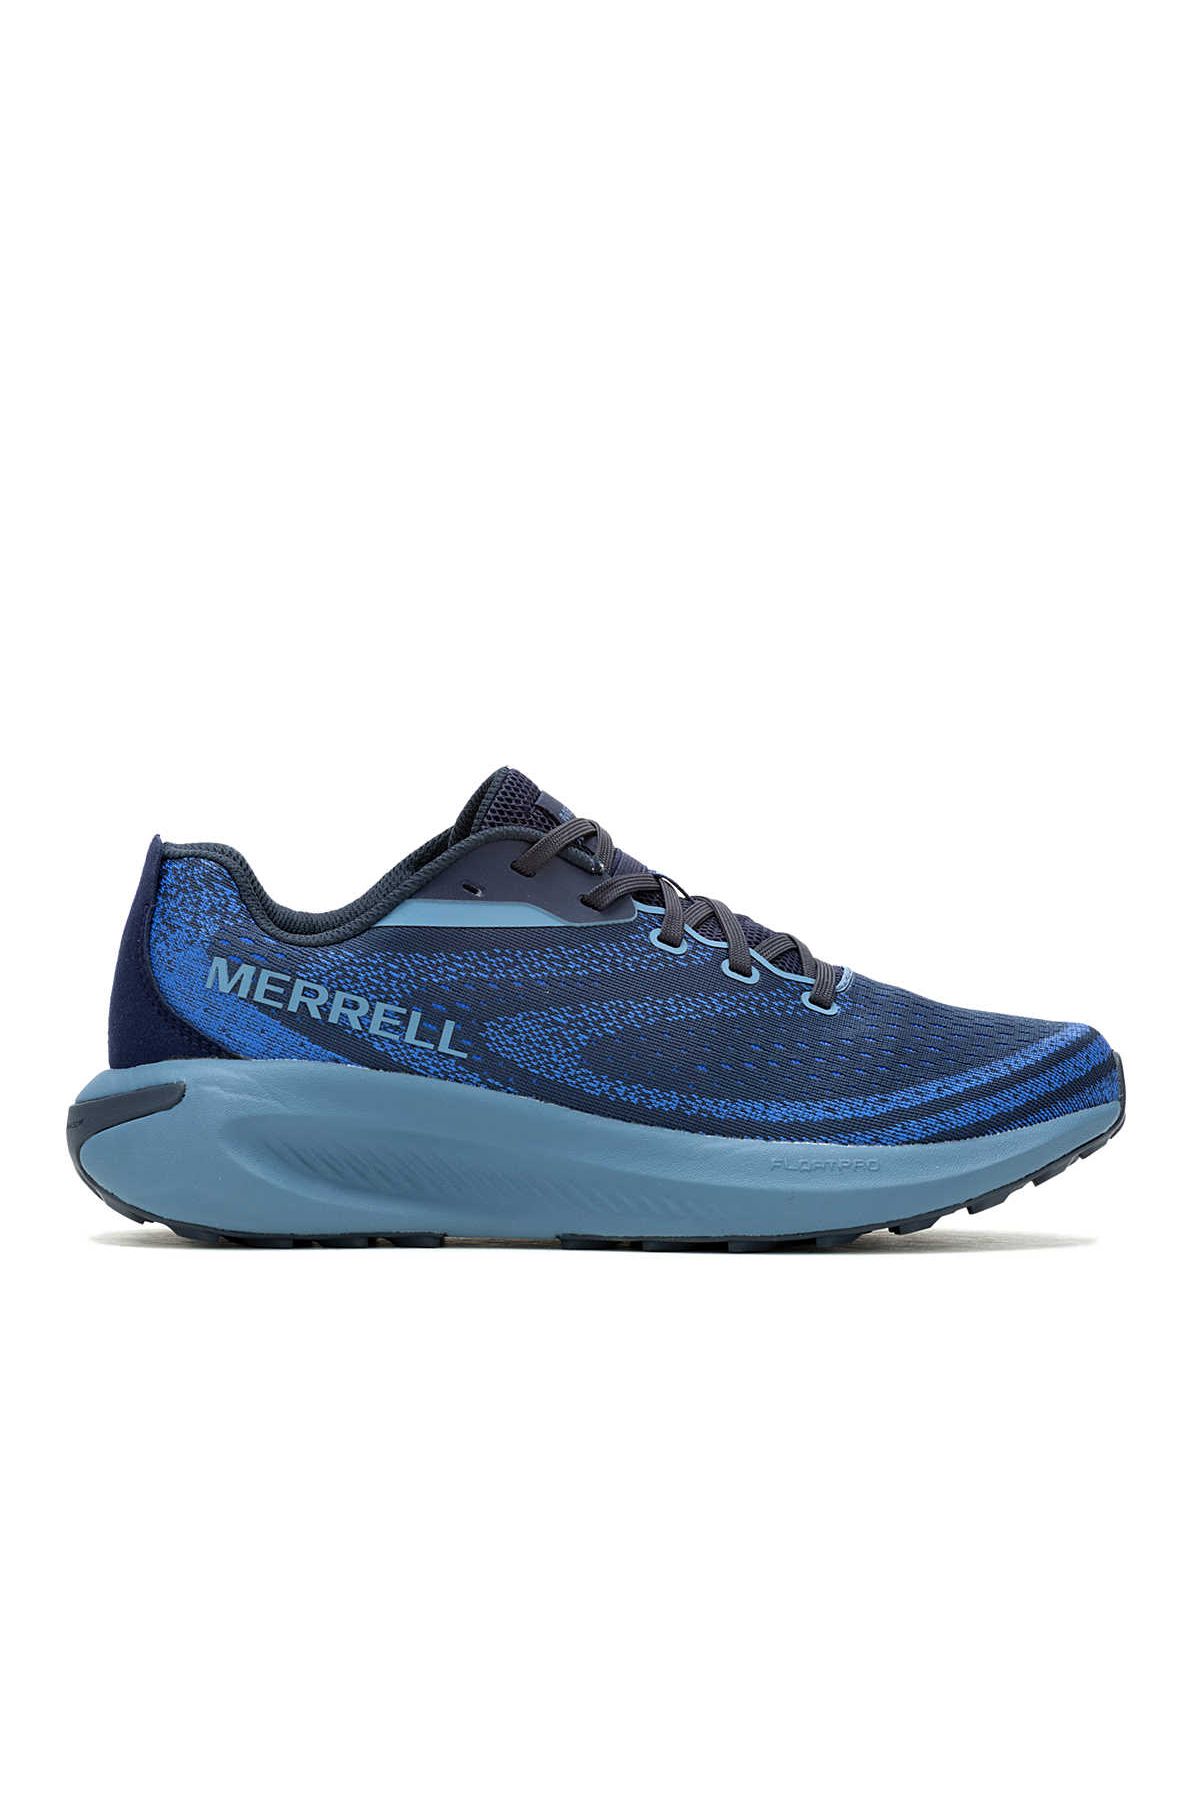 Merrell J068073 Morphlıte Erkek Spor Ayakkabısı Mavi